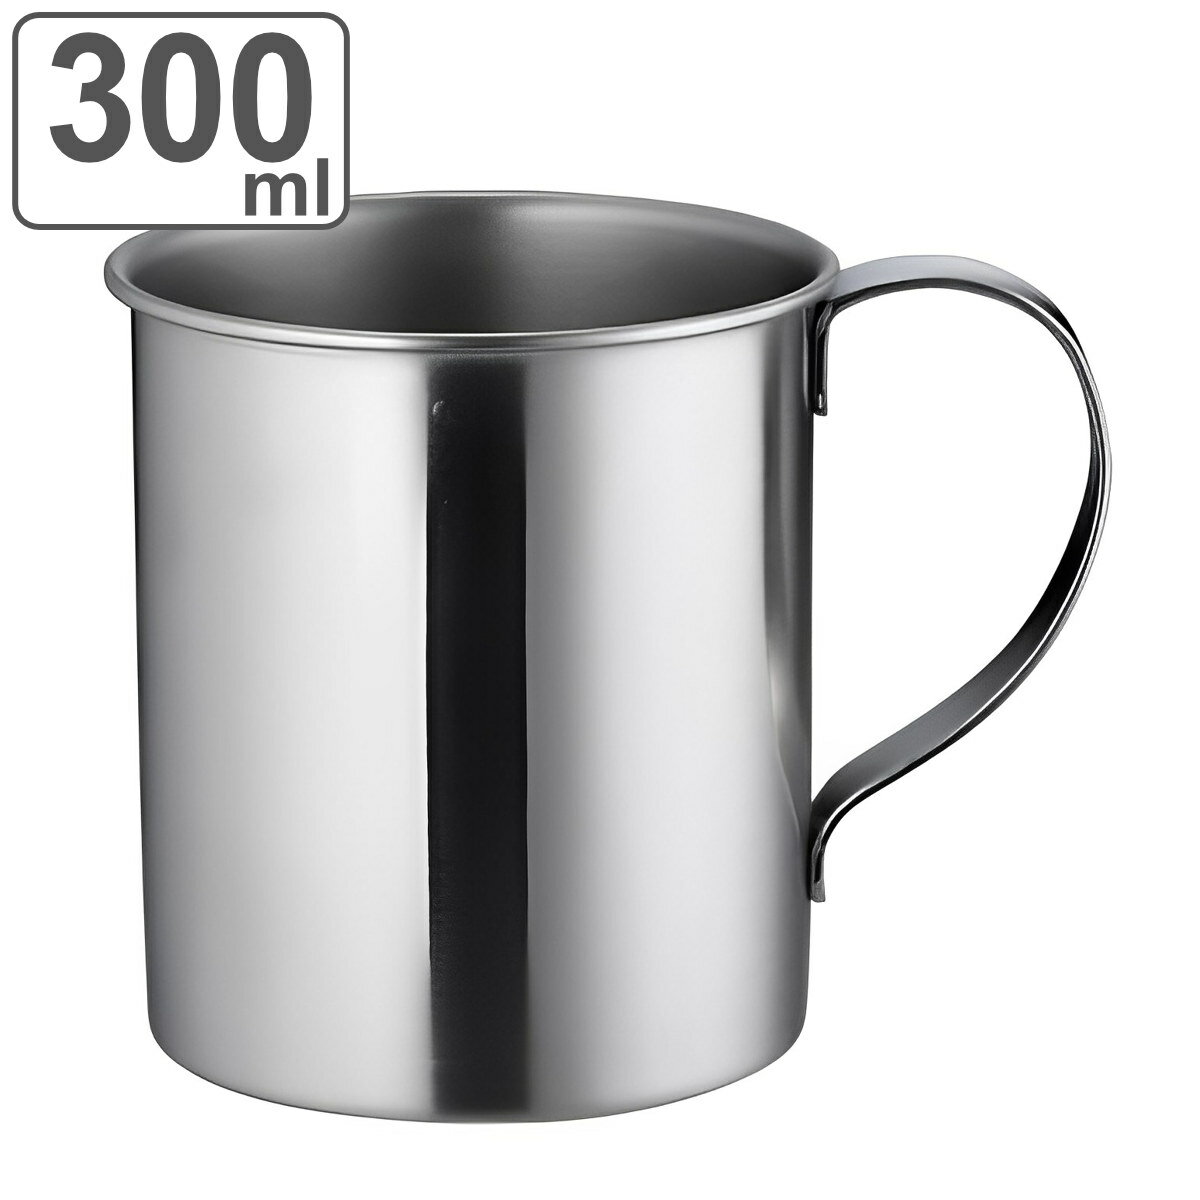 マグカップ 300ml ステンレスマグ シングル300 コップ ステンレス製 マグ カップ ステンレス 保温保冷 アウトドア 食洗機対応 取っ手付き 持ち手付き タンブラー 保温 保冷 コーヒー 紅茶 おし…